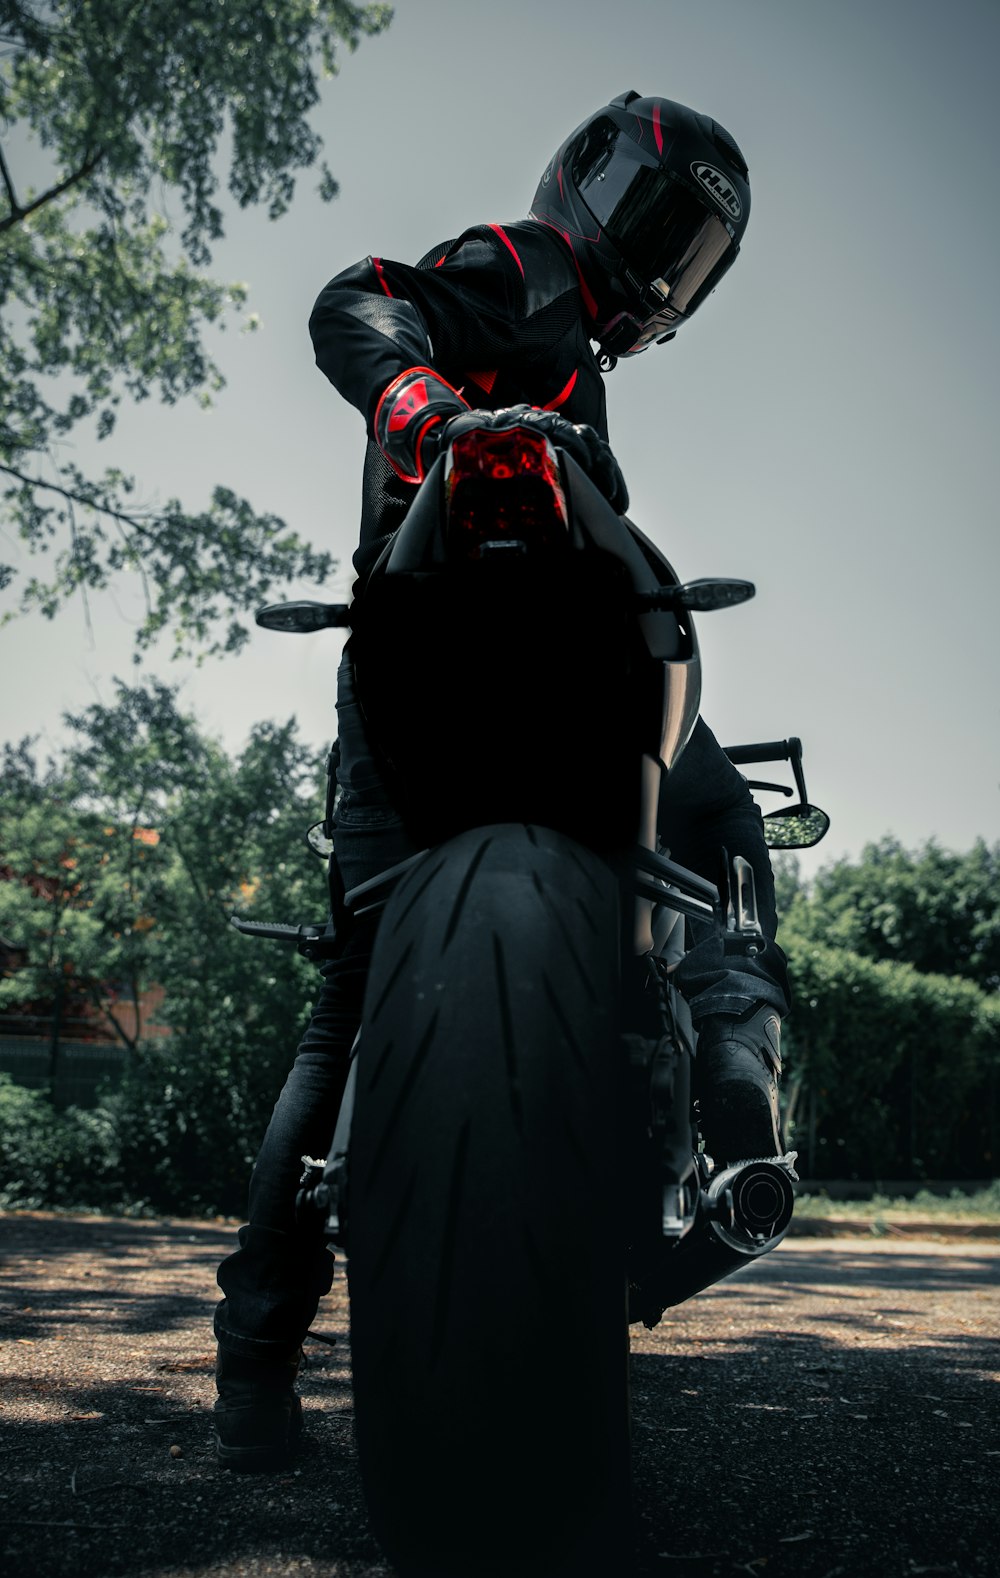 homme en veste en cuir noir conduisant une moto noire